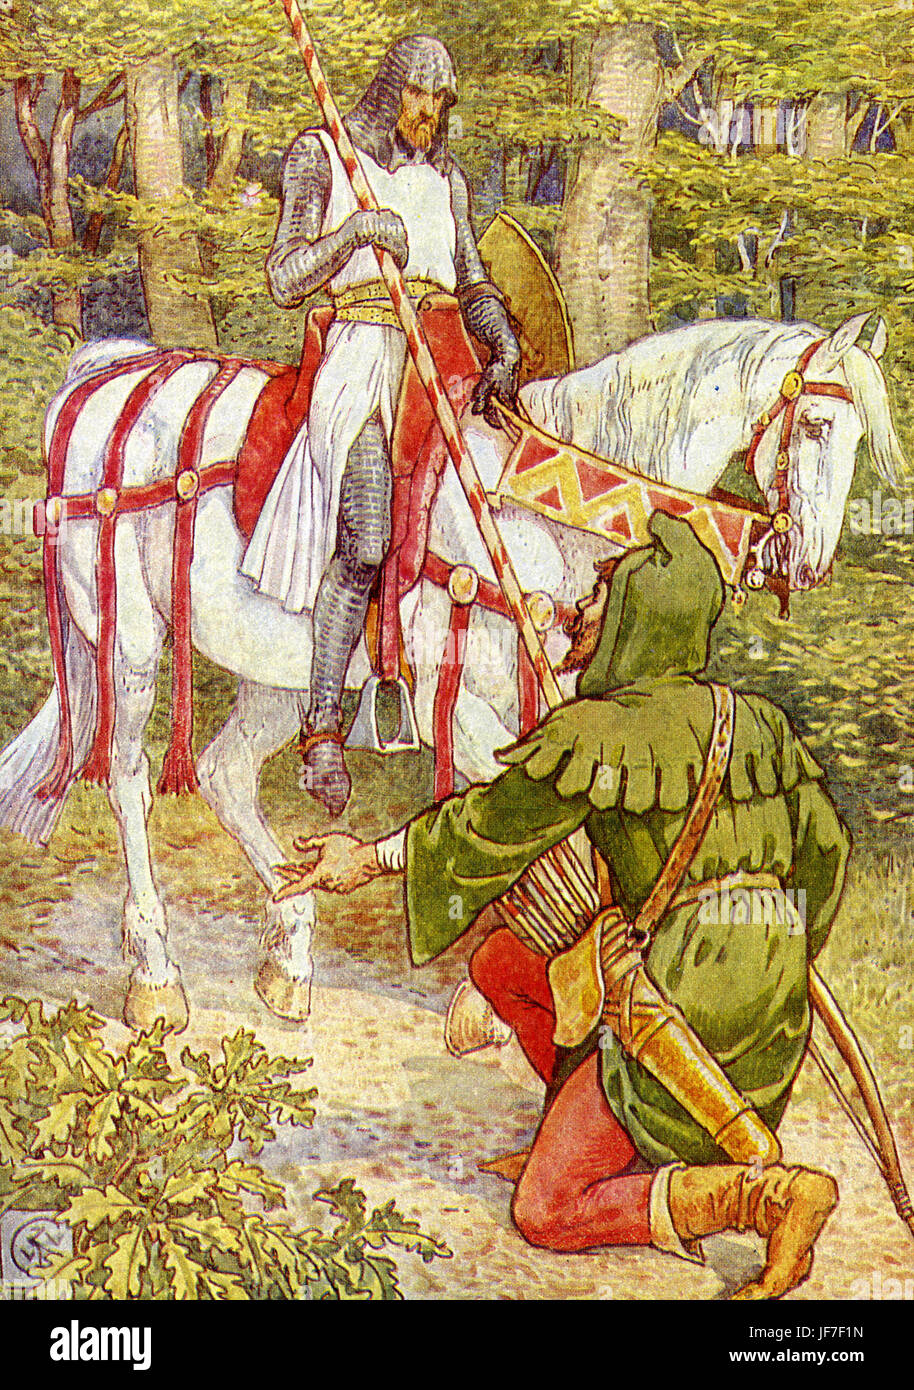 Robin Hood und die Männer von der Greenwood von Henry Gilbert. Rottöne Beschriftung: "Willkommen, Herr Ritter, in den Wald". (Robin Hood treffen einen Ritter im Wald). Illustriert von Walter Crane. C.1912 Stockfoto